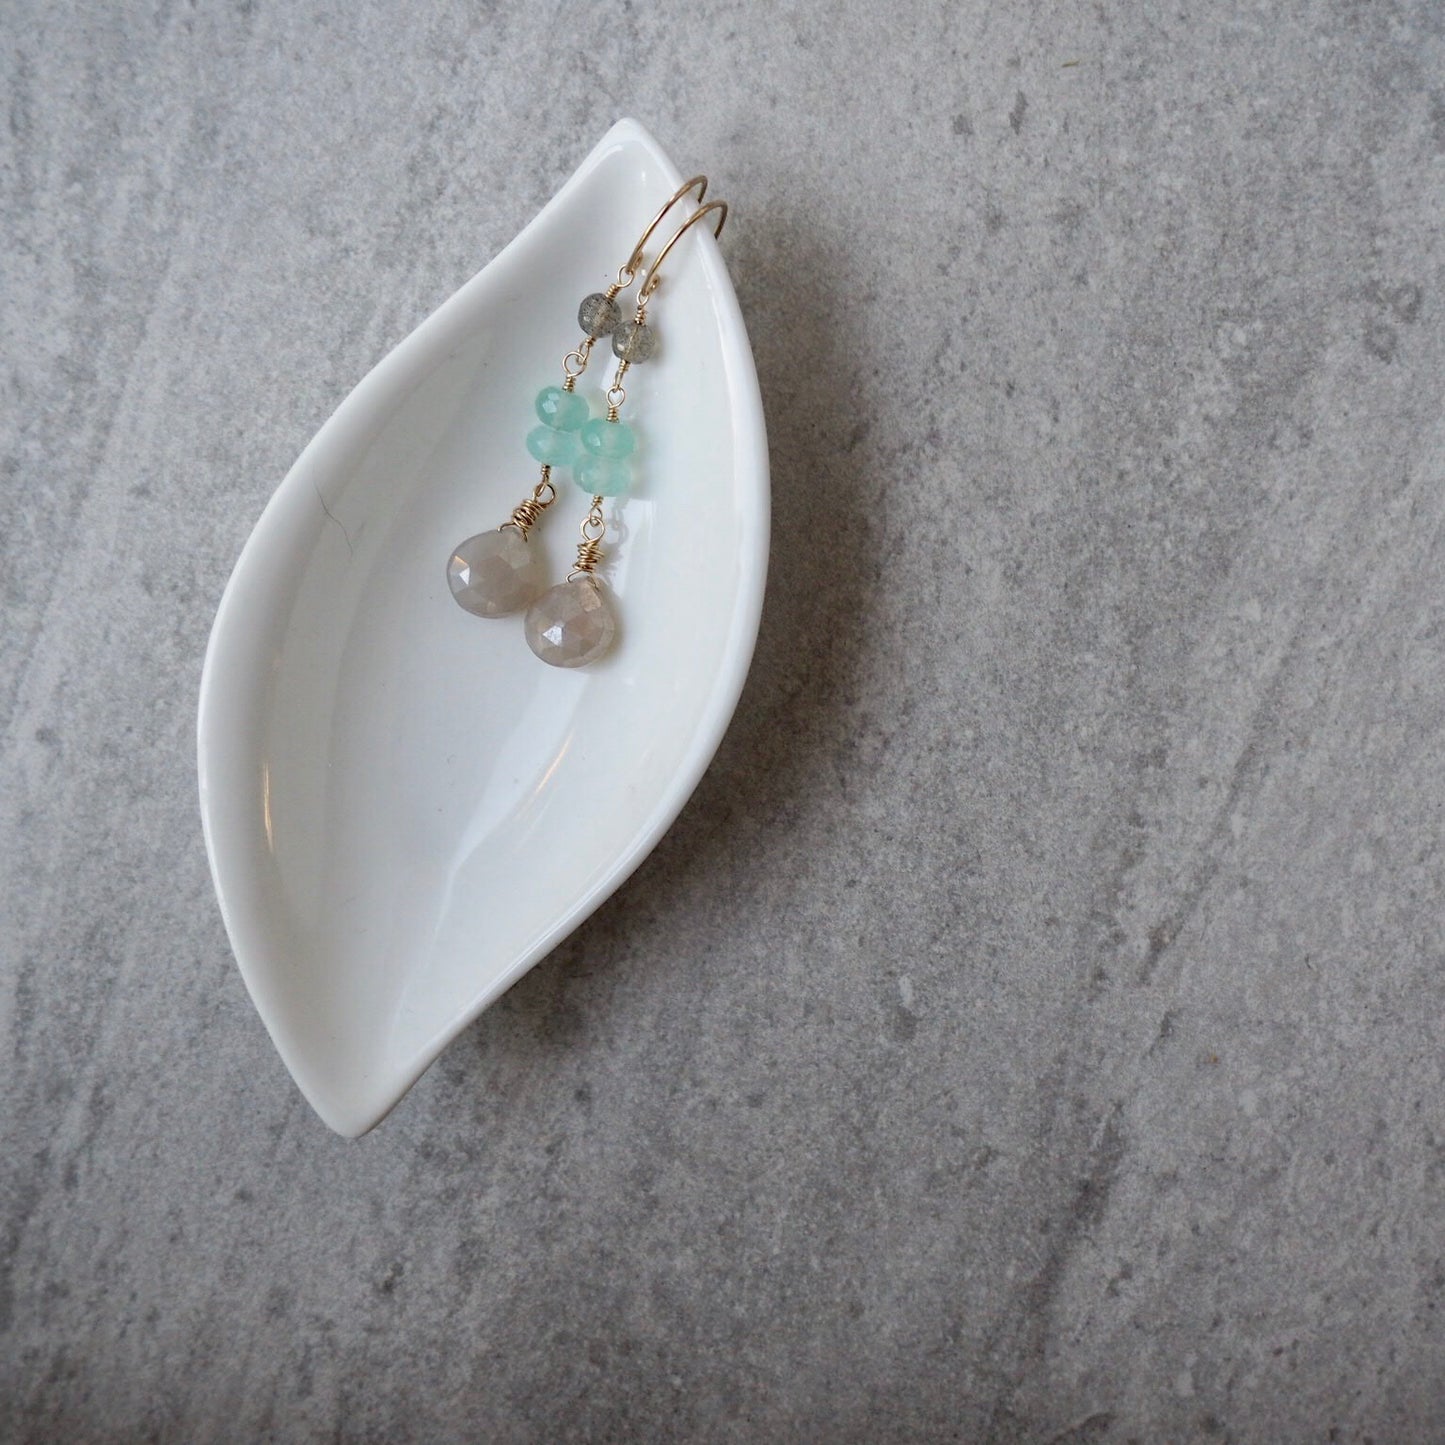 Delicate Gemstone Earrings in Neutral Palette by Wallis Designs